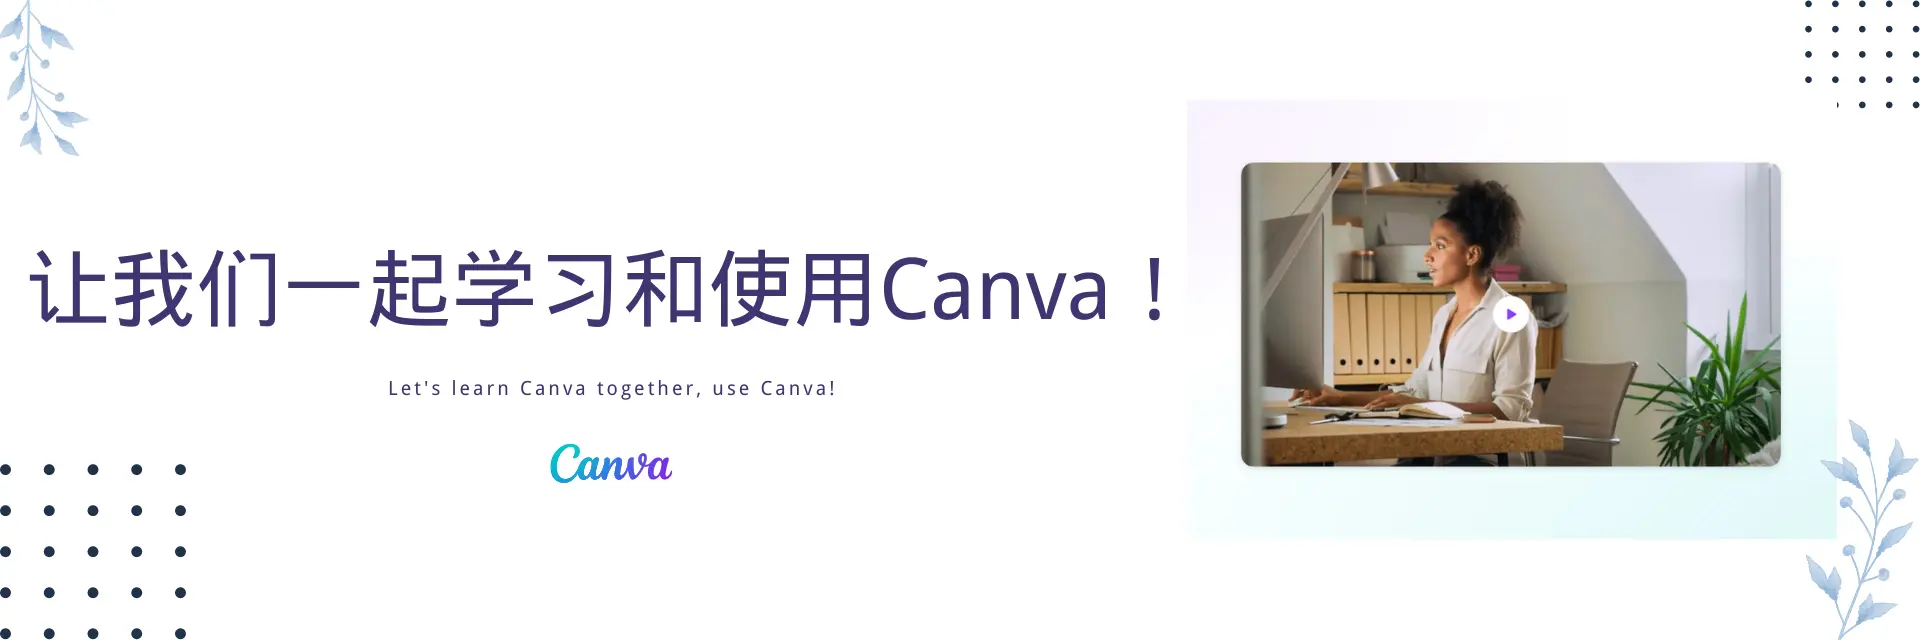 副业时代 站内使用 Canva页面 封面Slide图片 - image-4.webp